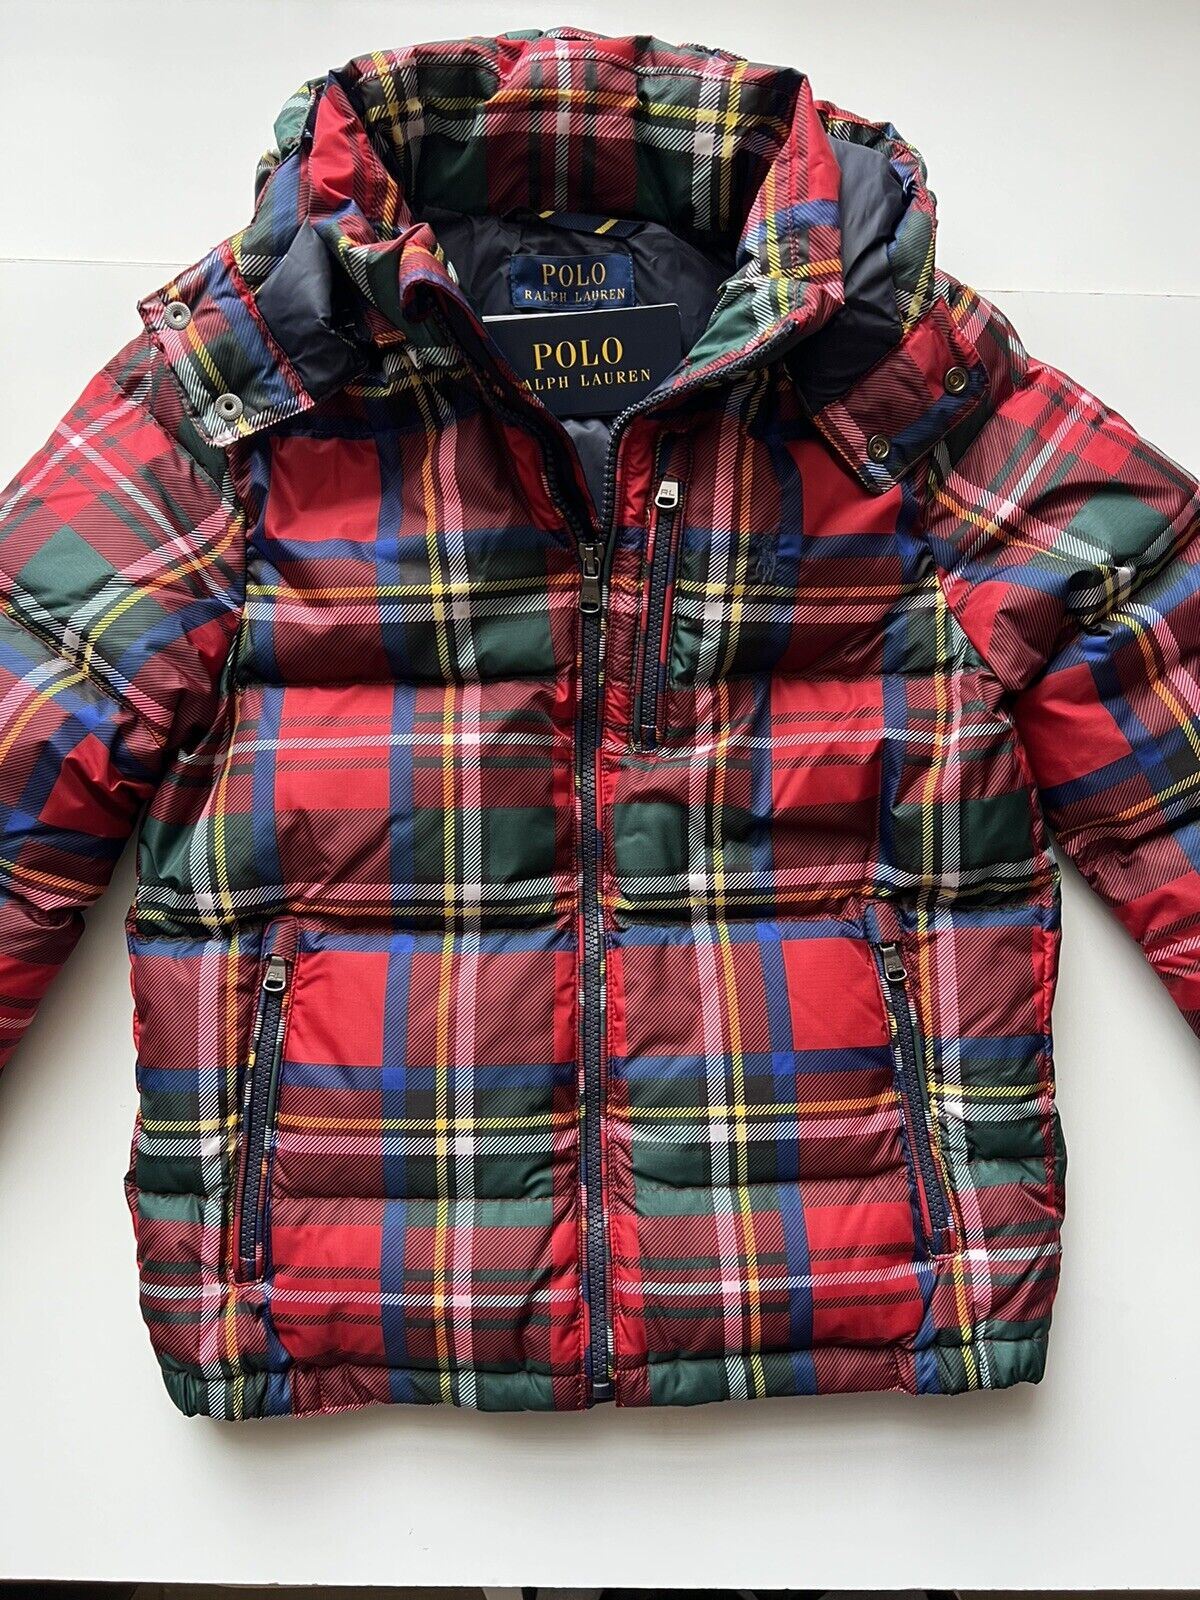 Куртка Polo Ralph Lauren для мальчиков с худи красного цвета S (8 лет) для мальчика (8 лет) за 185 долл. США (NWT) 